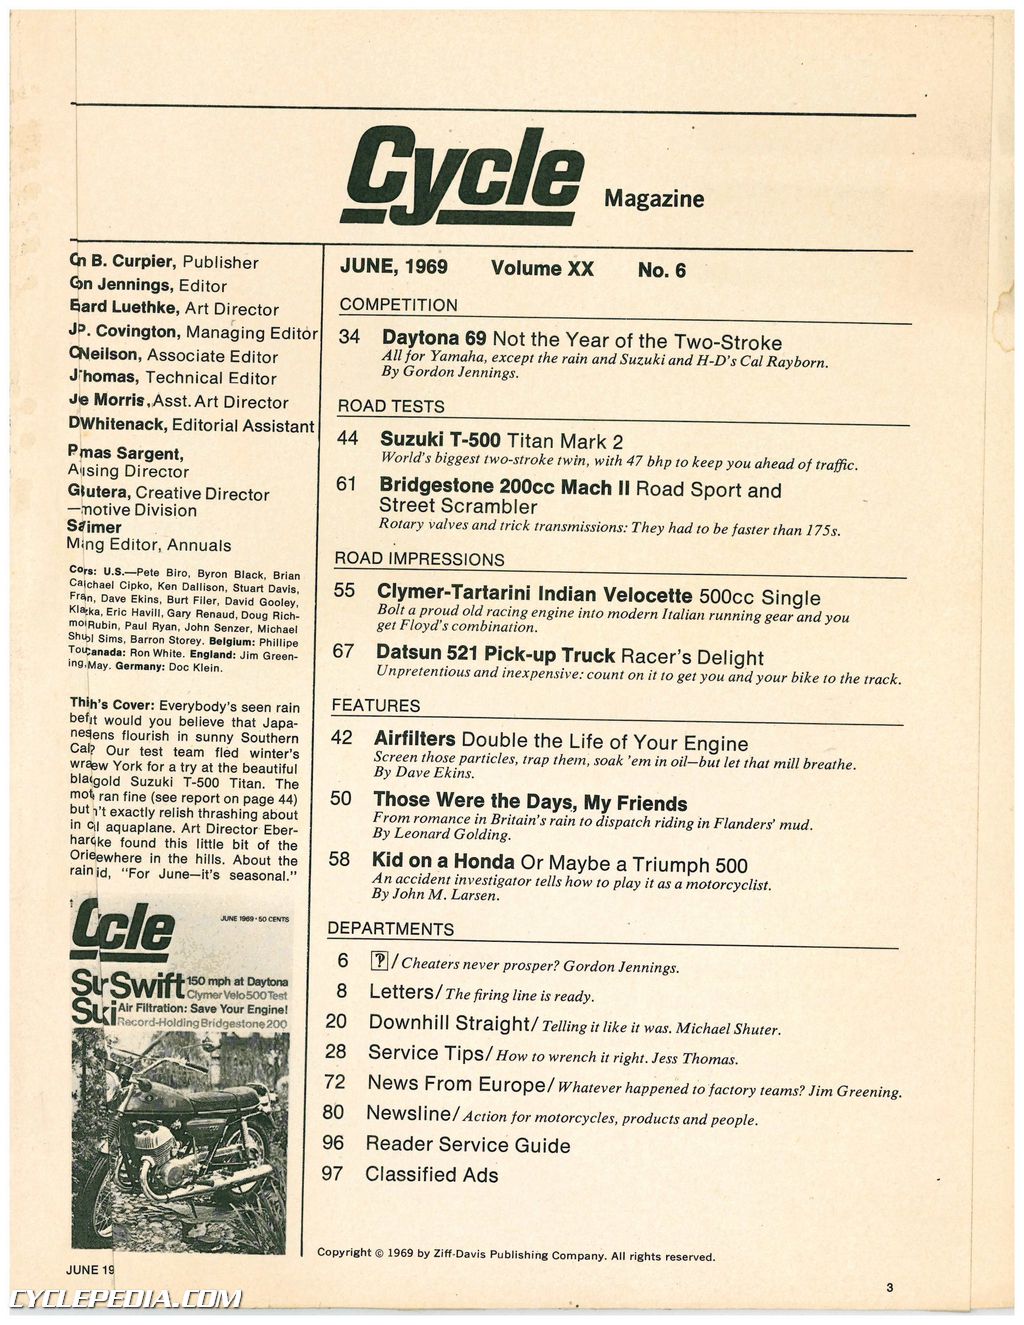 June 1969 Cycle Magazine - Super Swift Suzuki